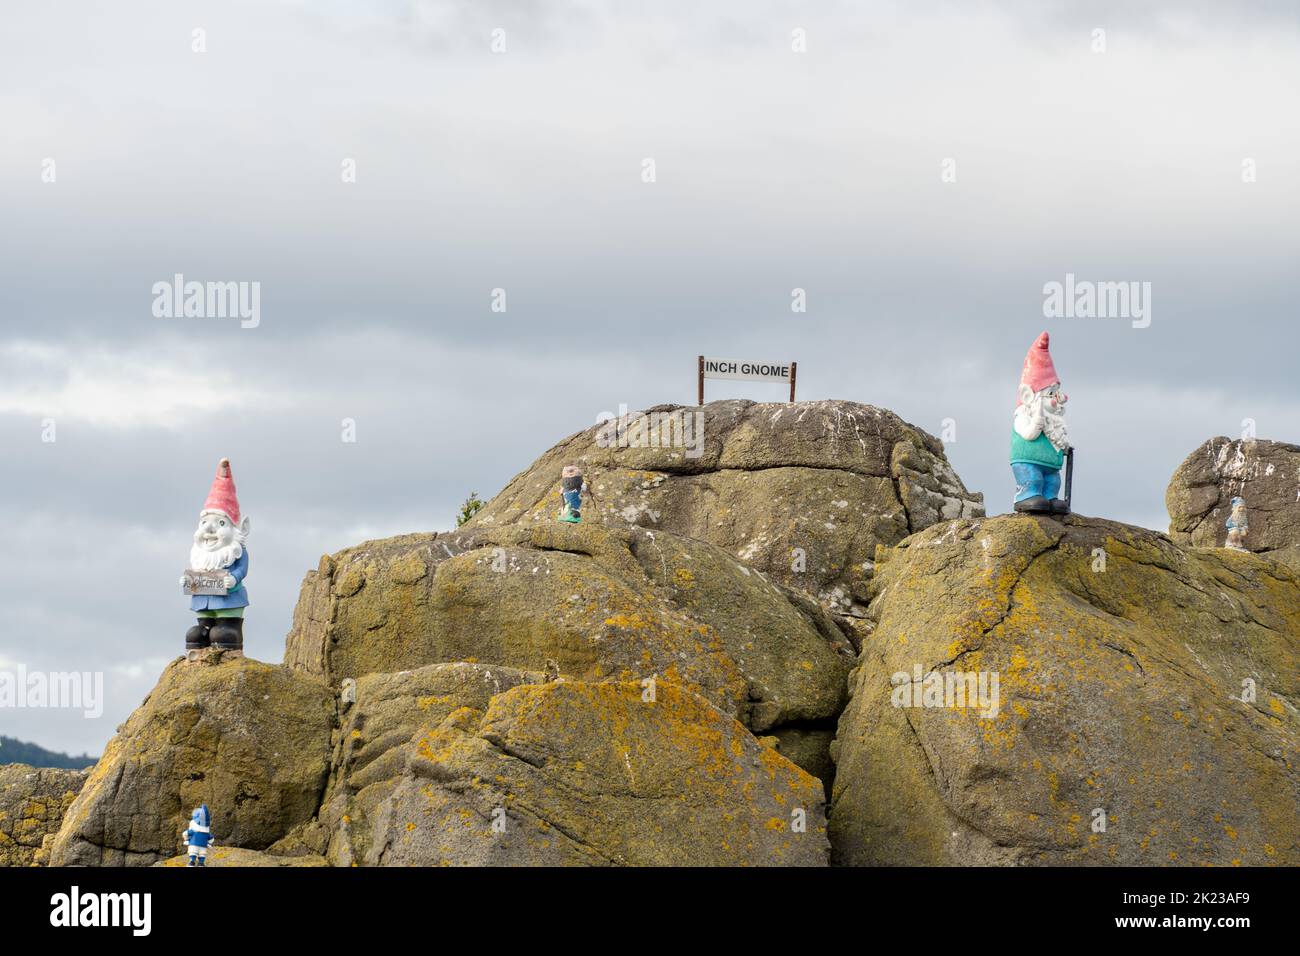 Inchgnome Island, eine felsige Insel, die mit Gartengnomen geschmückt ist, grenzt an Inchcolm auf Burntisland am Firth of Forth, Schottland, Großbritannien Stockfoto